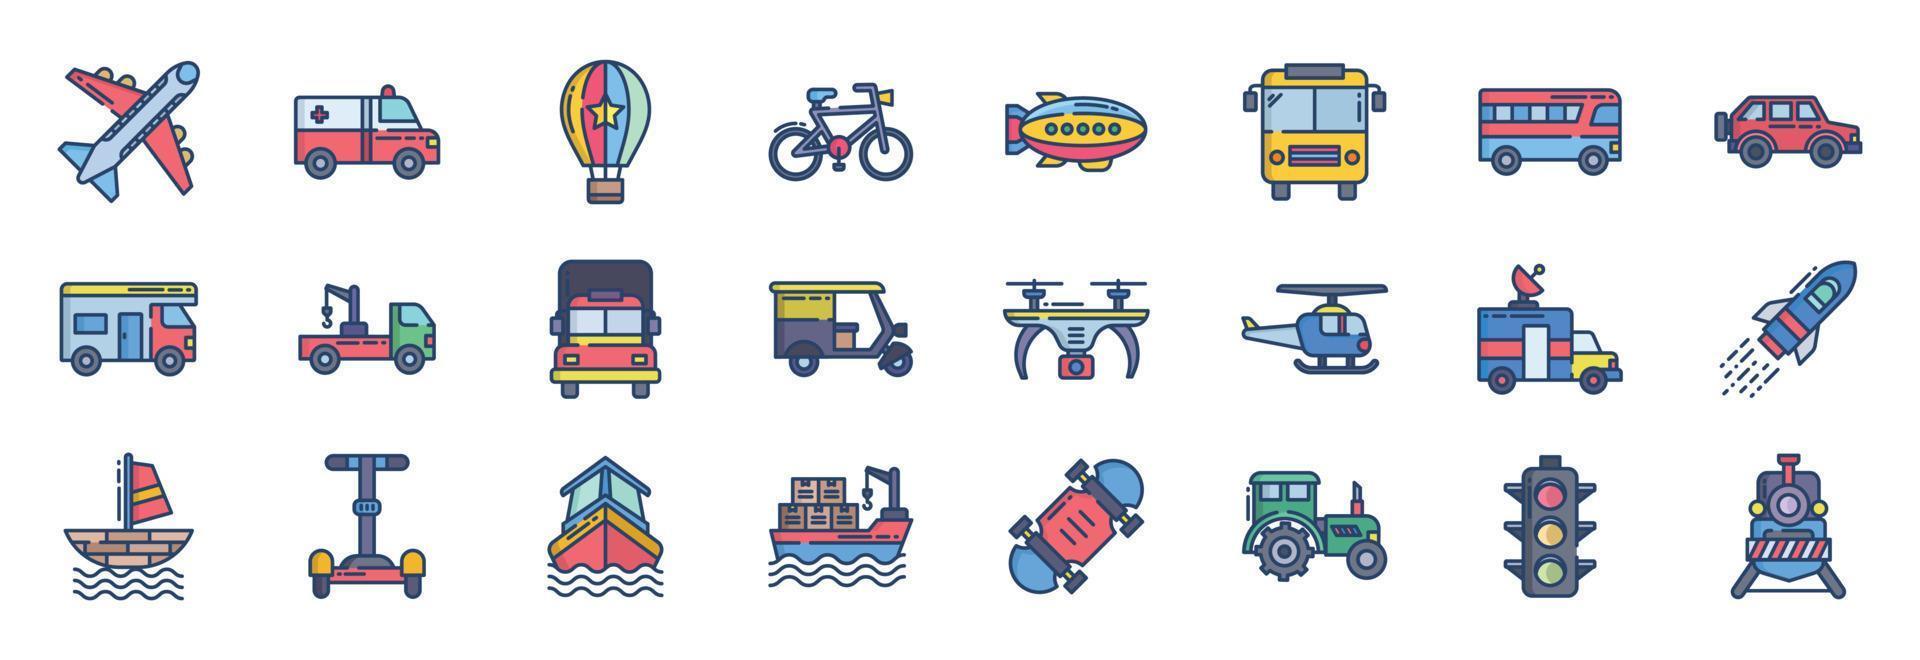 samling av ikoner relaterad till transport, Inklusive ikoner tycka om fordon, fartyg, bil och Mer. vektor illustrationer, pixel perfekt uppsättning